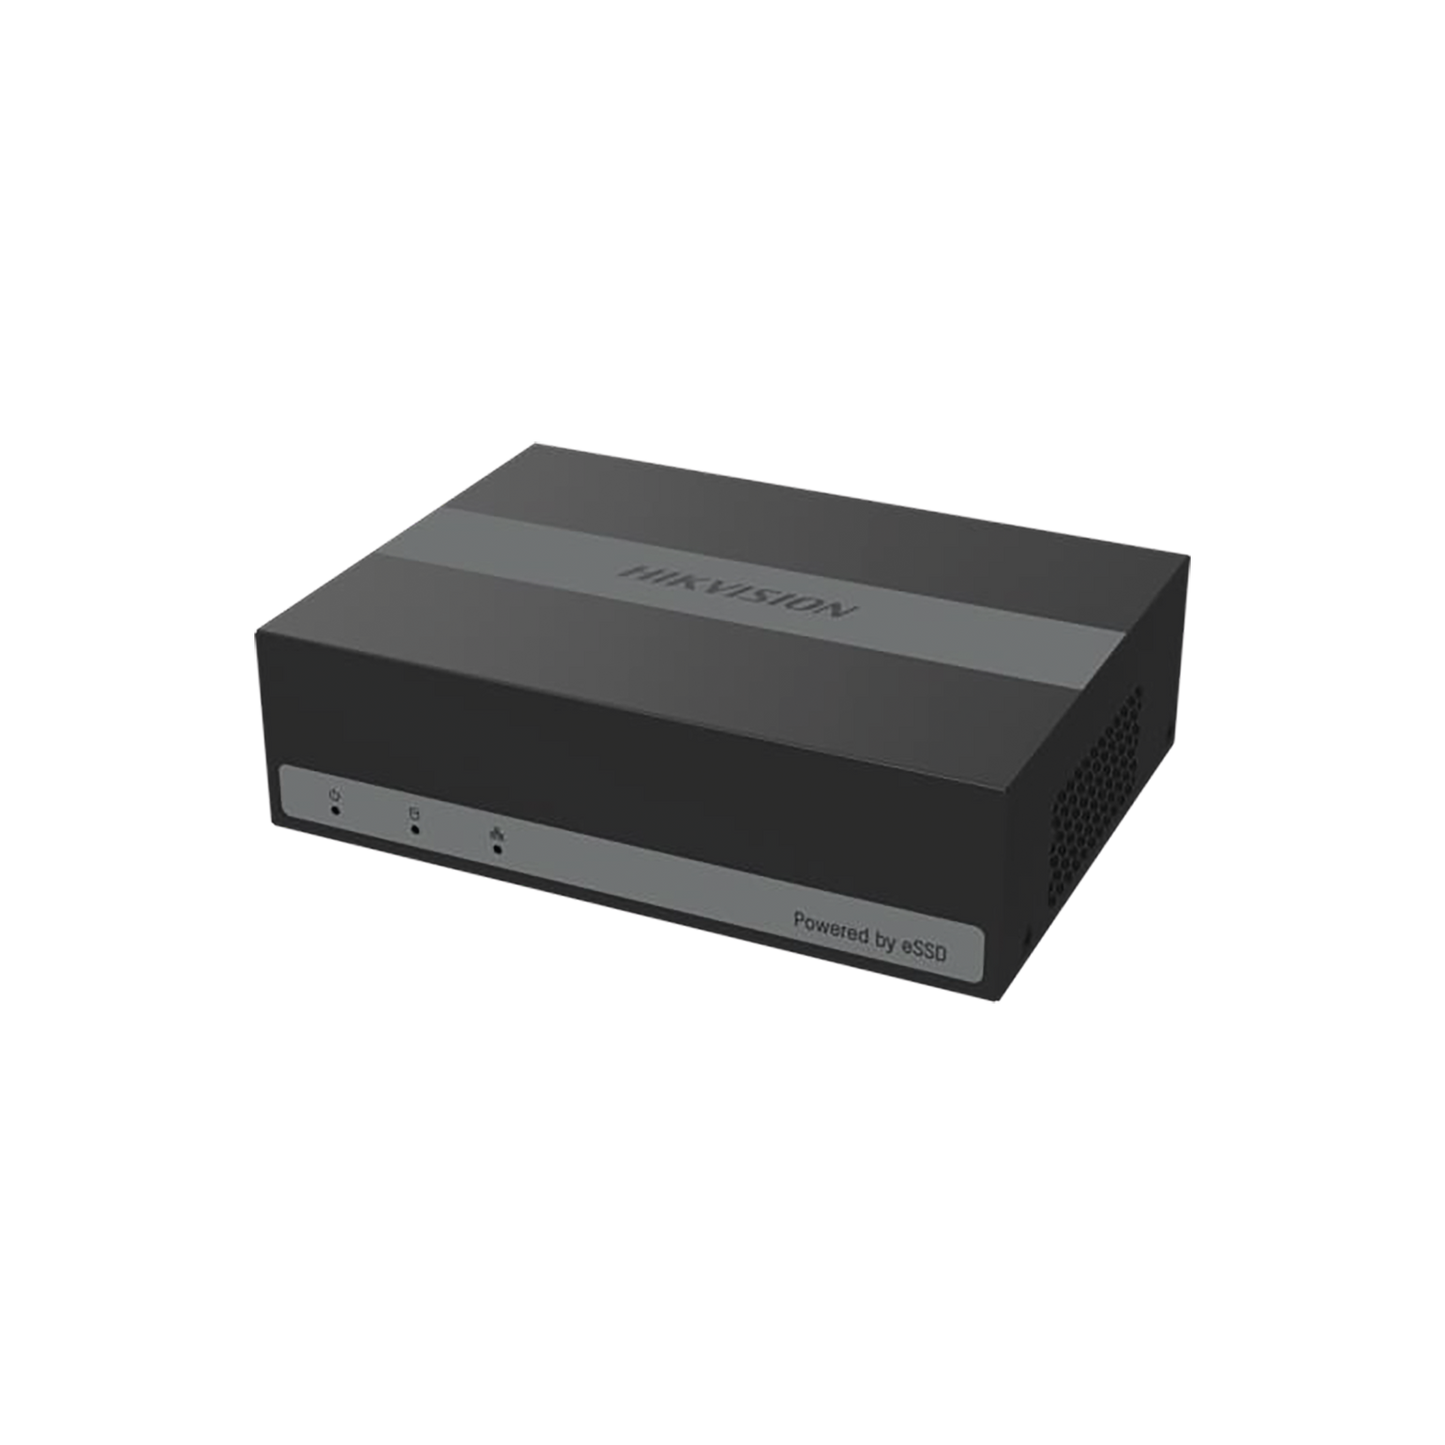 DVR 2 Megapíxel (1080P) Lite / 8 Canales TURBOHD + 2 Canal IP /  Hasta 1 Mes de Grabación / Unidad de Estado Solido Incluido / H.265+ / ACUSENSE Lite (Evita Falsas Alarmas) / Diseño Ultra Compacto / Extra Silencioso /  eSSD de  960 GB